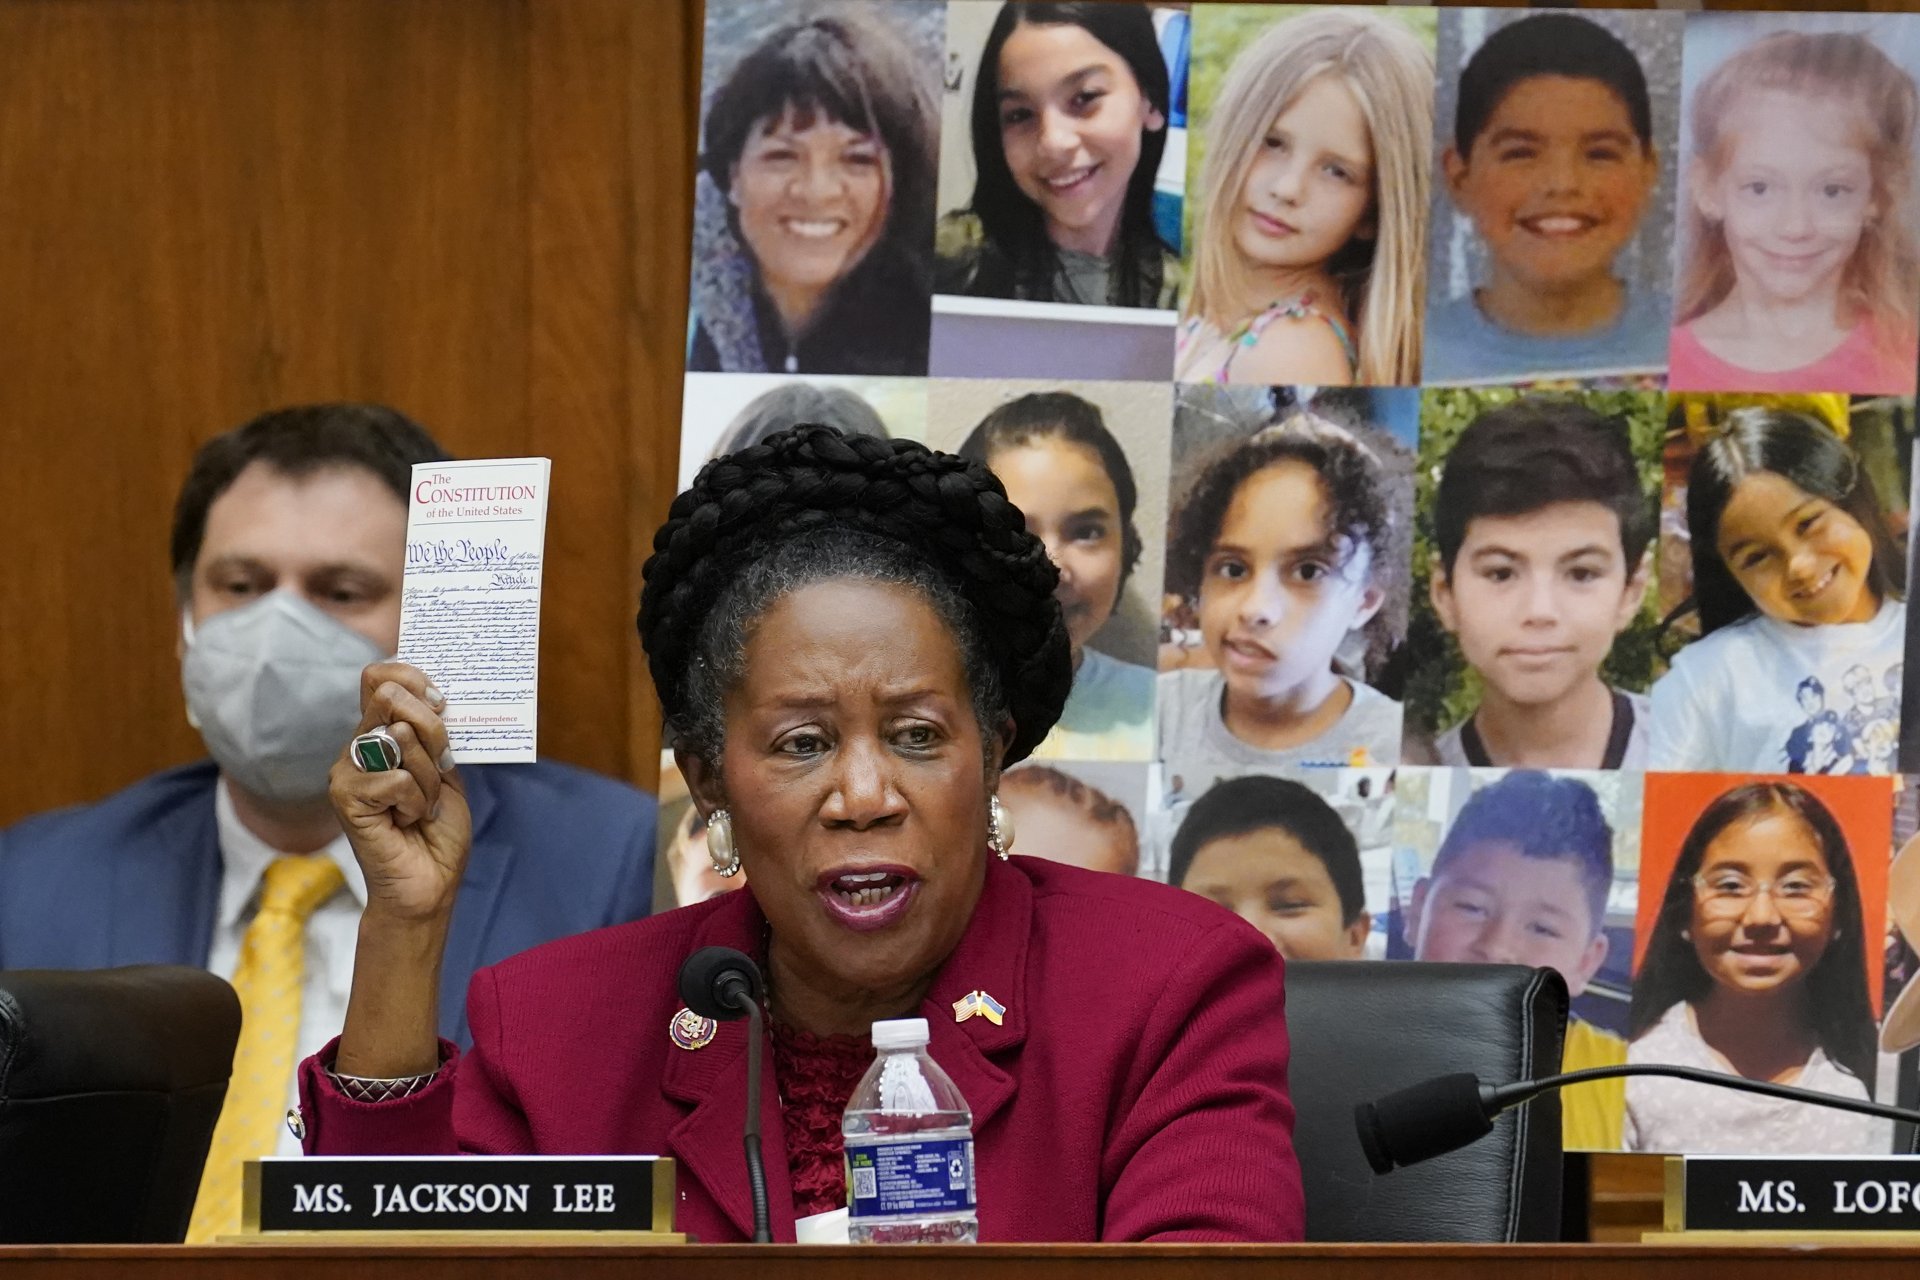 На фона на снимки на загинали деца в Увалде, Тексас конгресменът демократ Шийла Джаксън Лий, Тексас, говори в подкрепа на мерките за контрол на оръжията, обобщени в наречени в Закон за защита на нашите деца